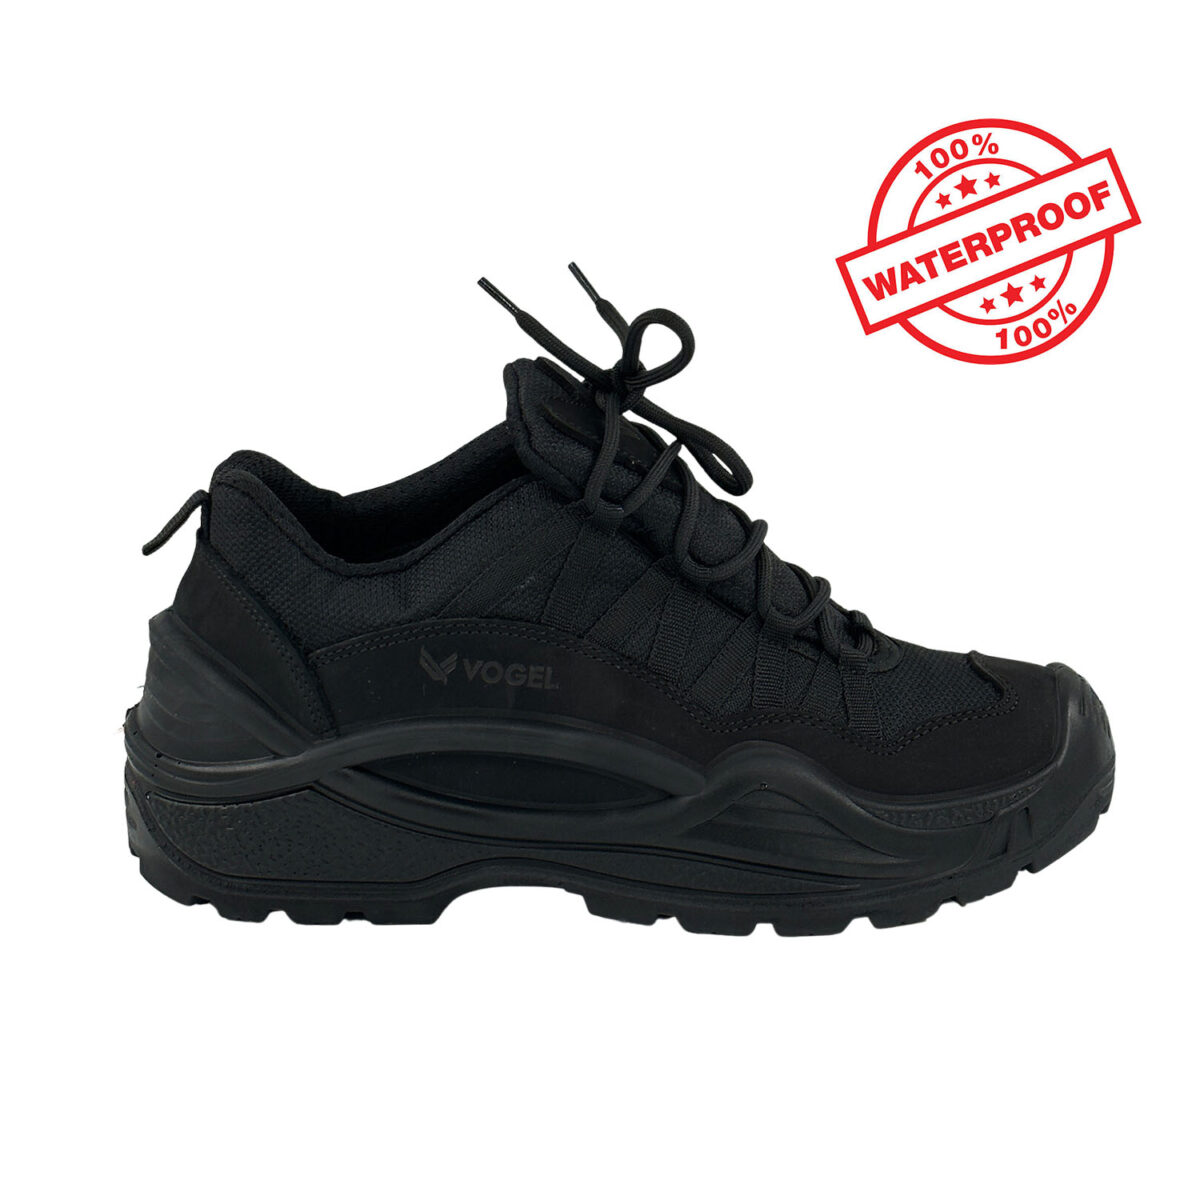 siyah outdoor ayakkabi sugecirmez waterproof vogel1493c3 logolu